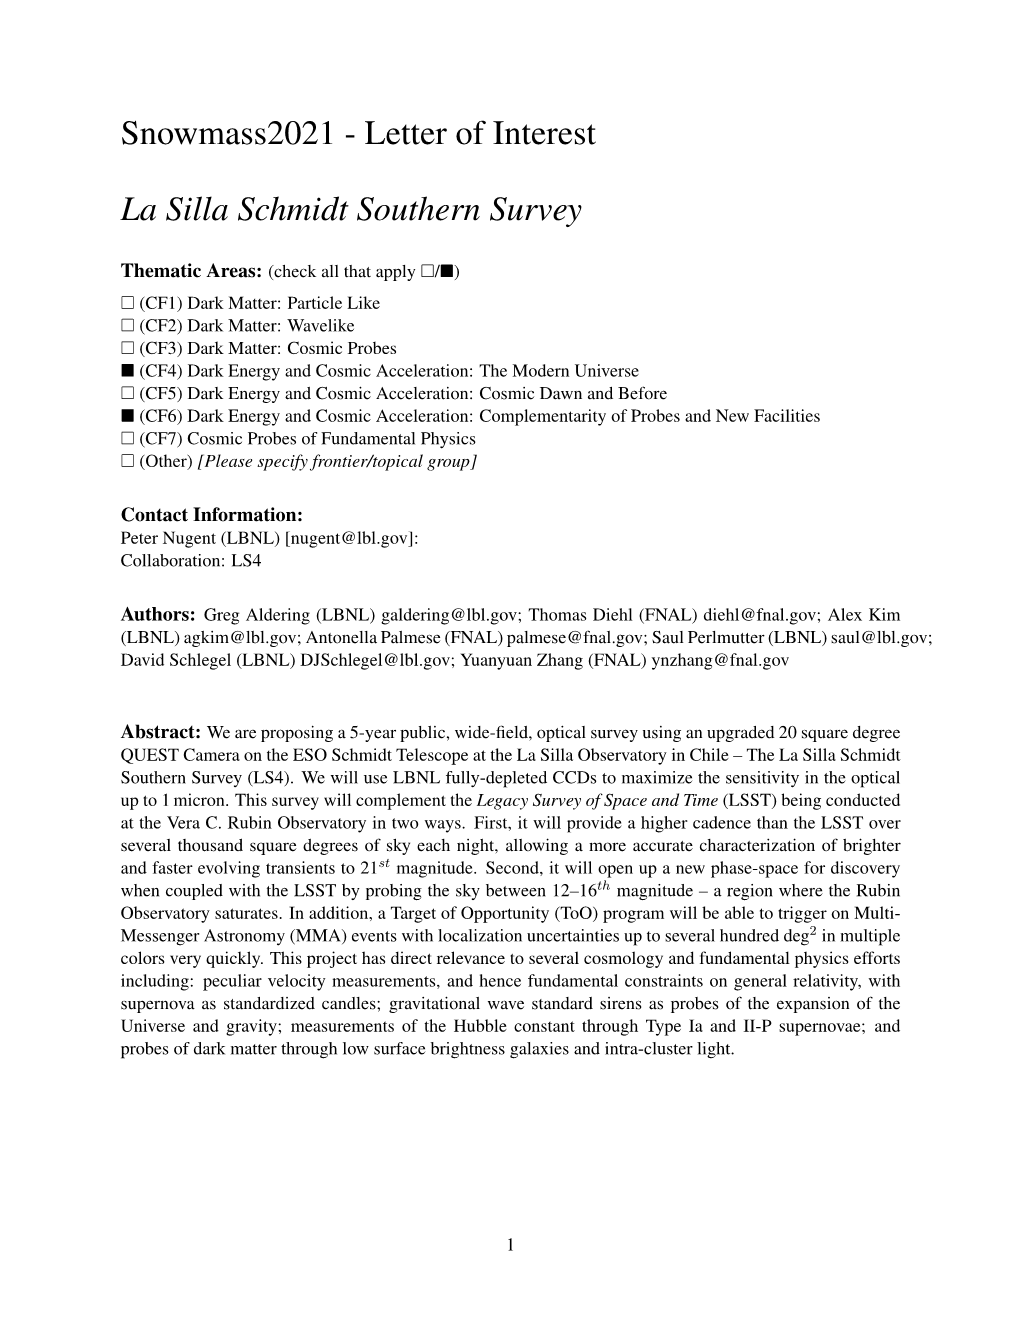 Letter of Interest La Silla Schmidt Southern Survey